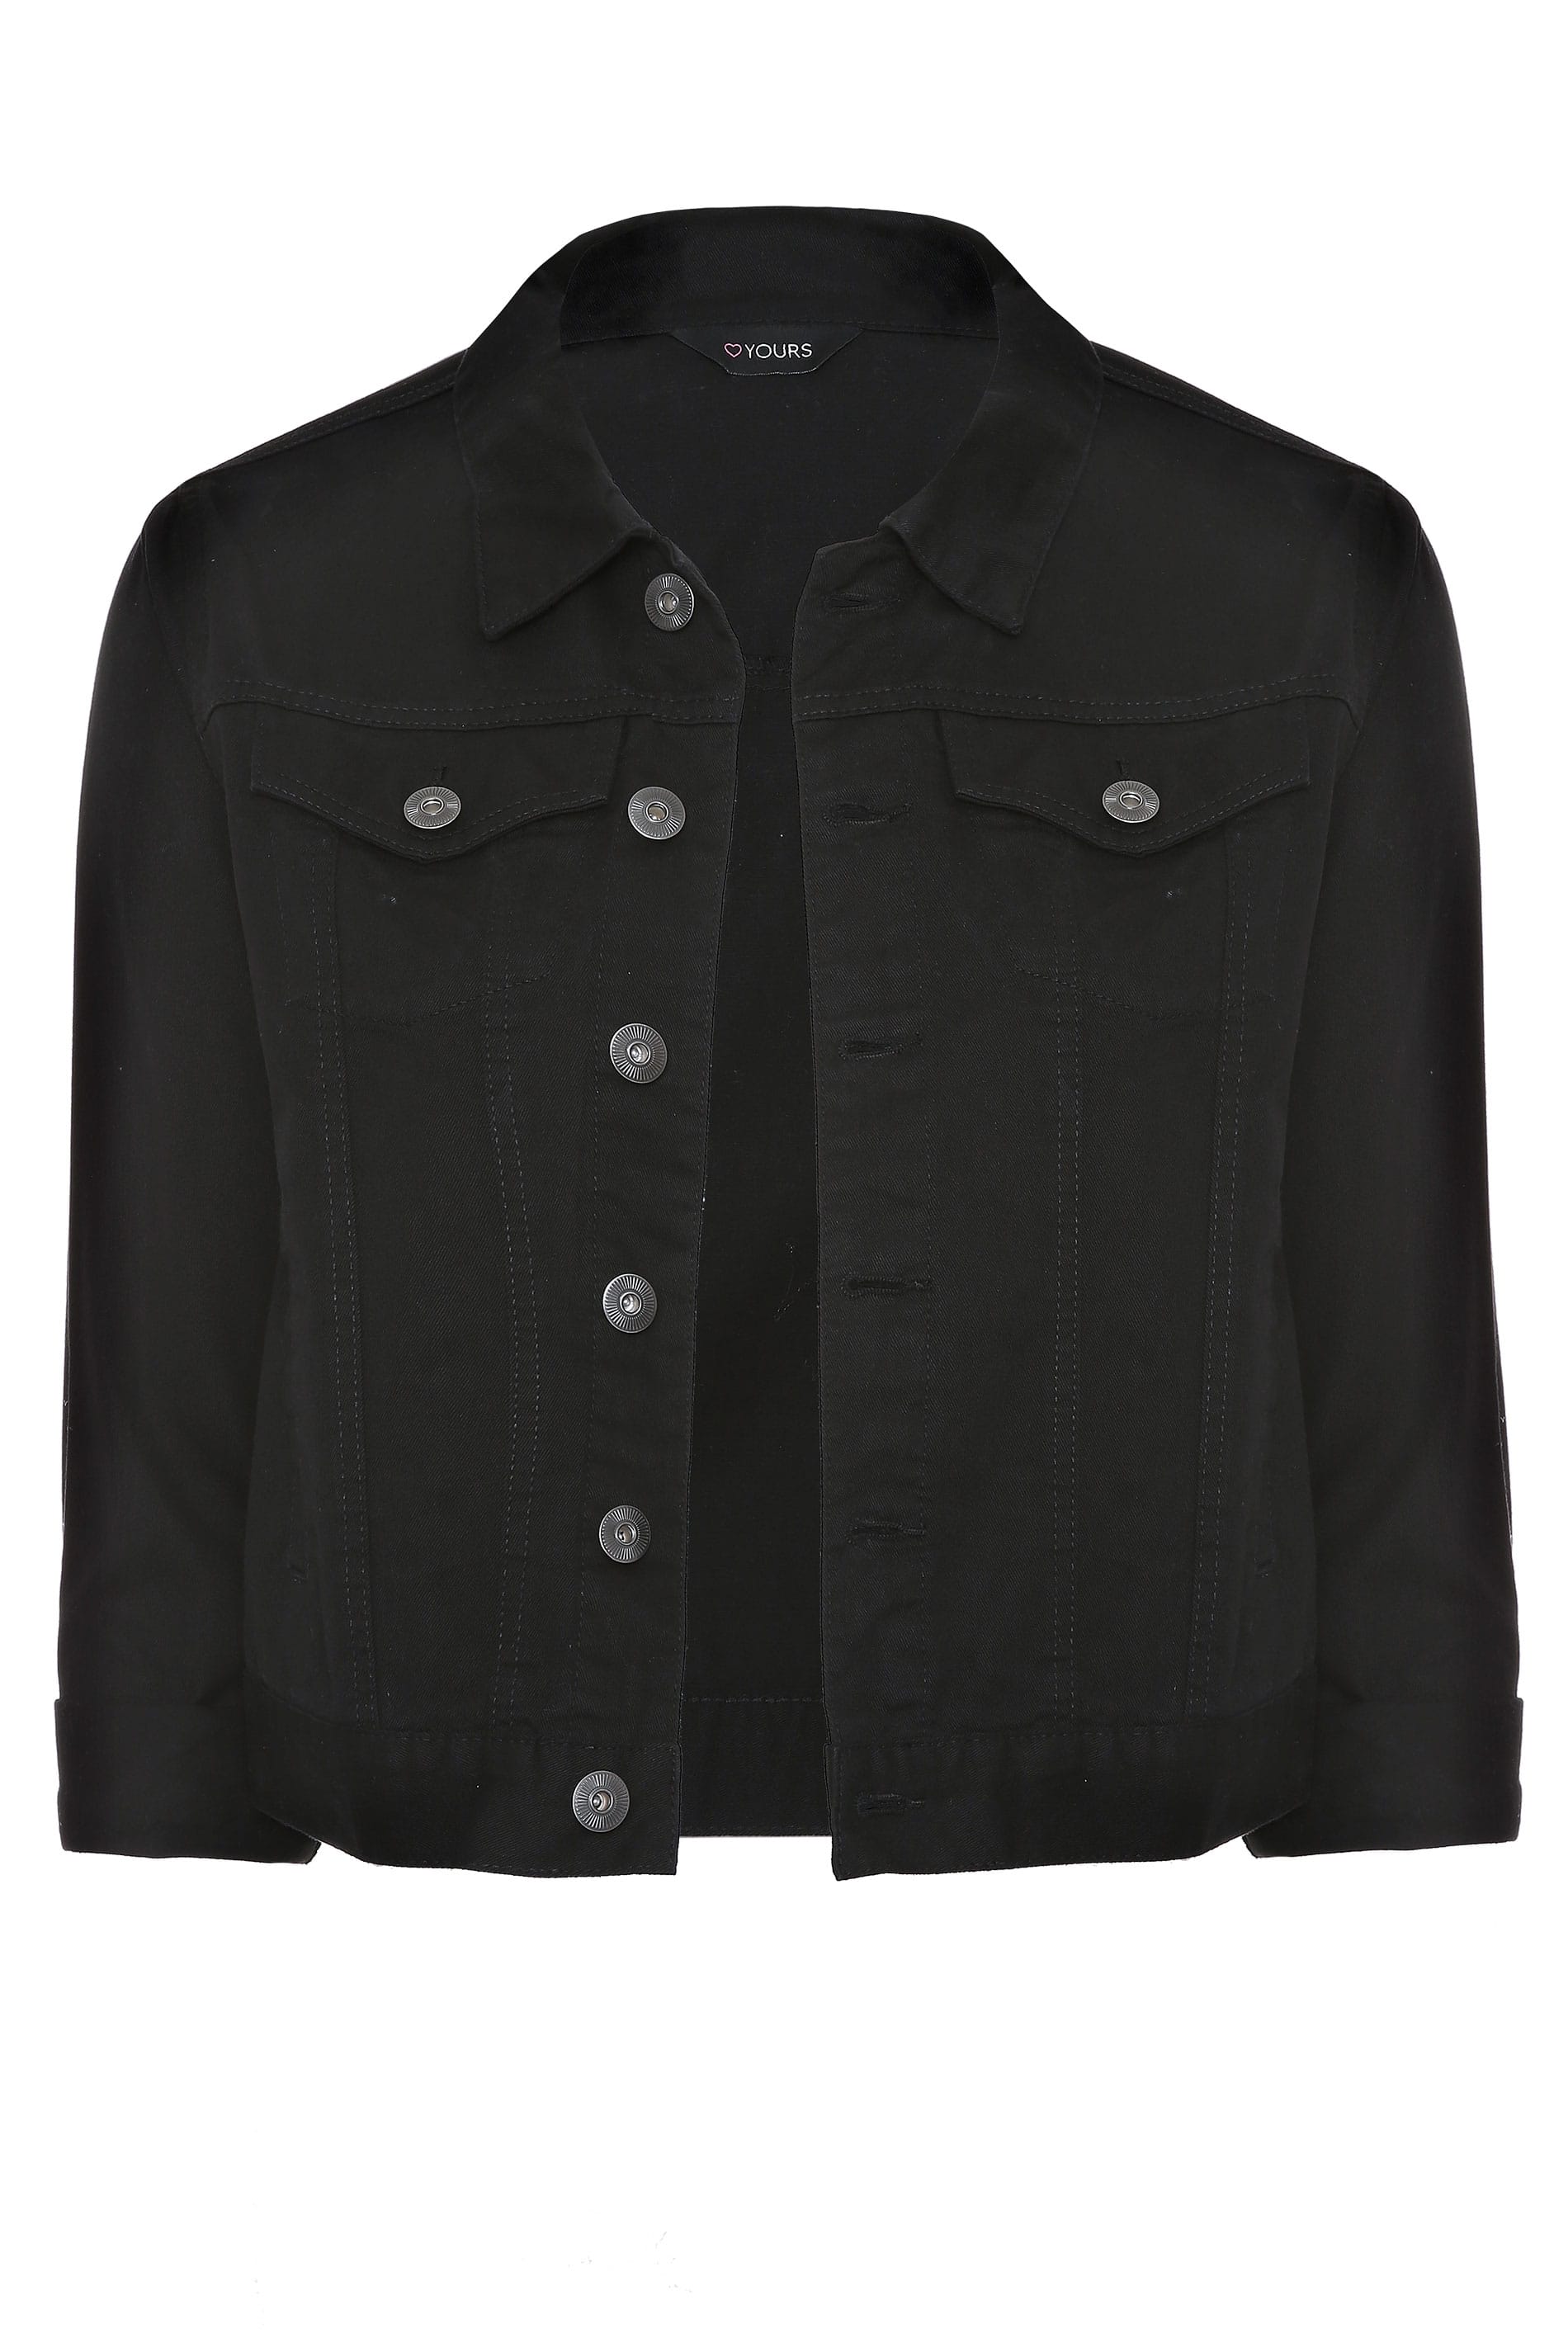 Black Cropped Denim Jacket | Yours Clothing